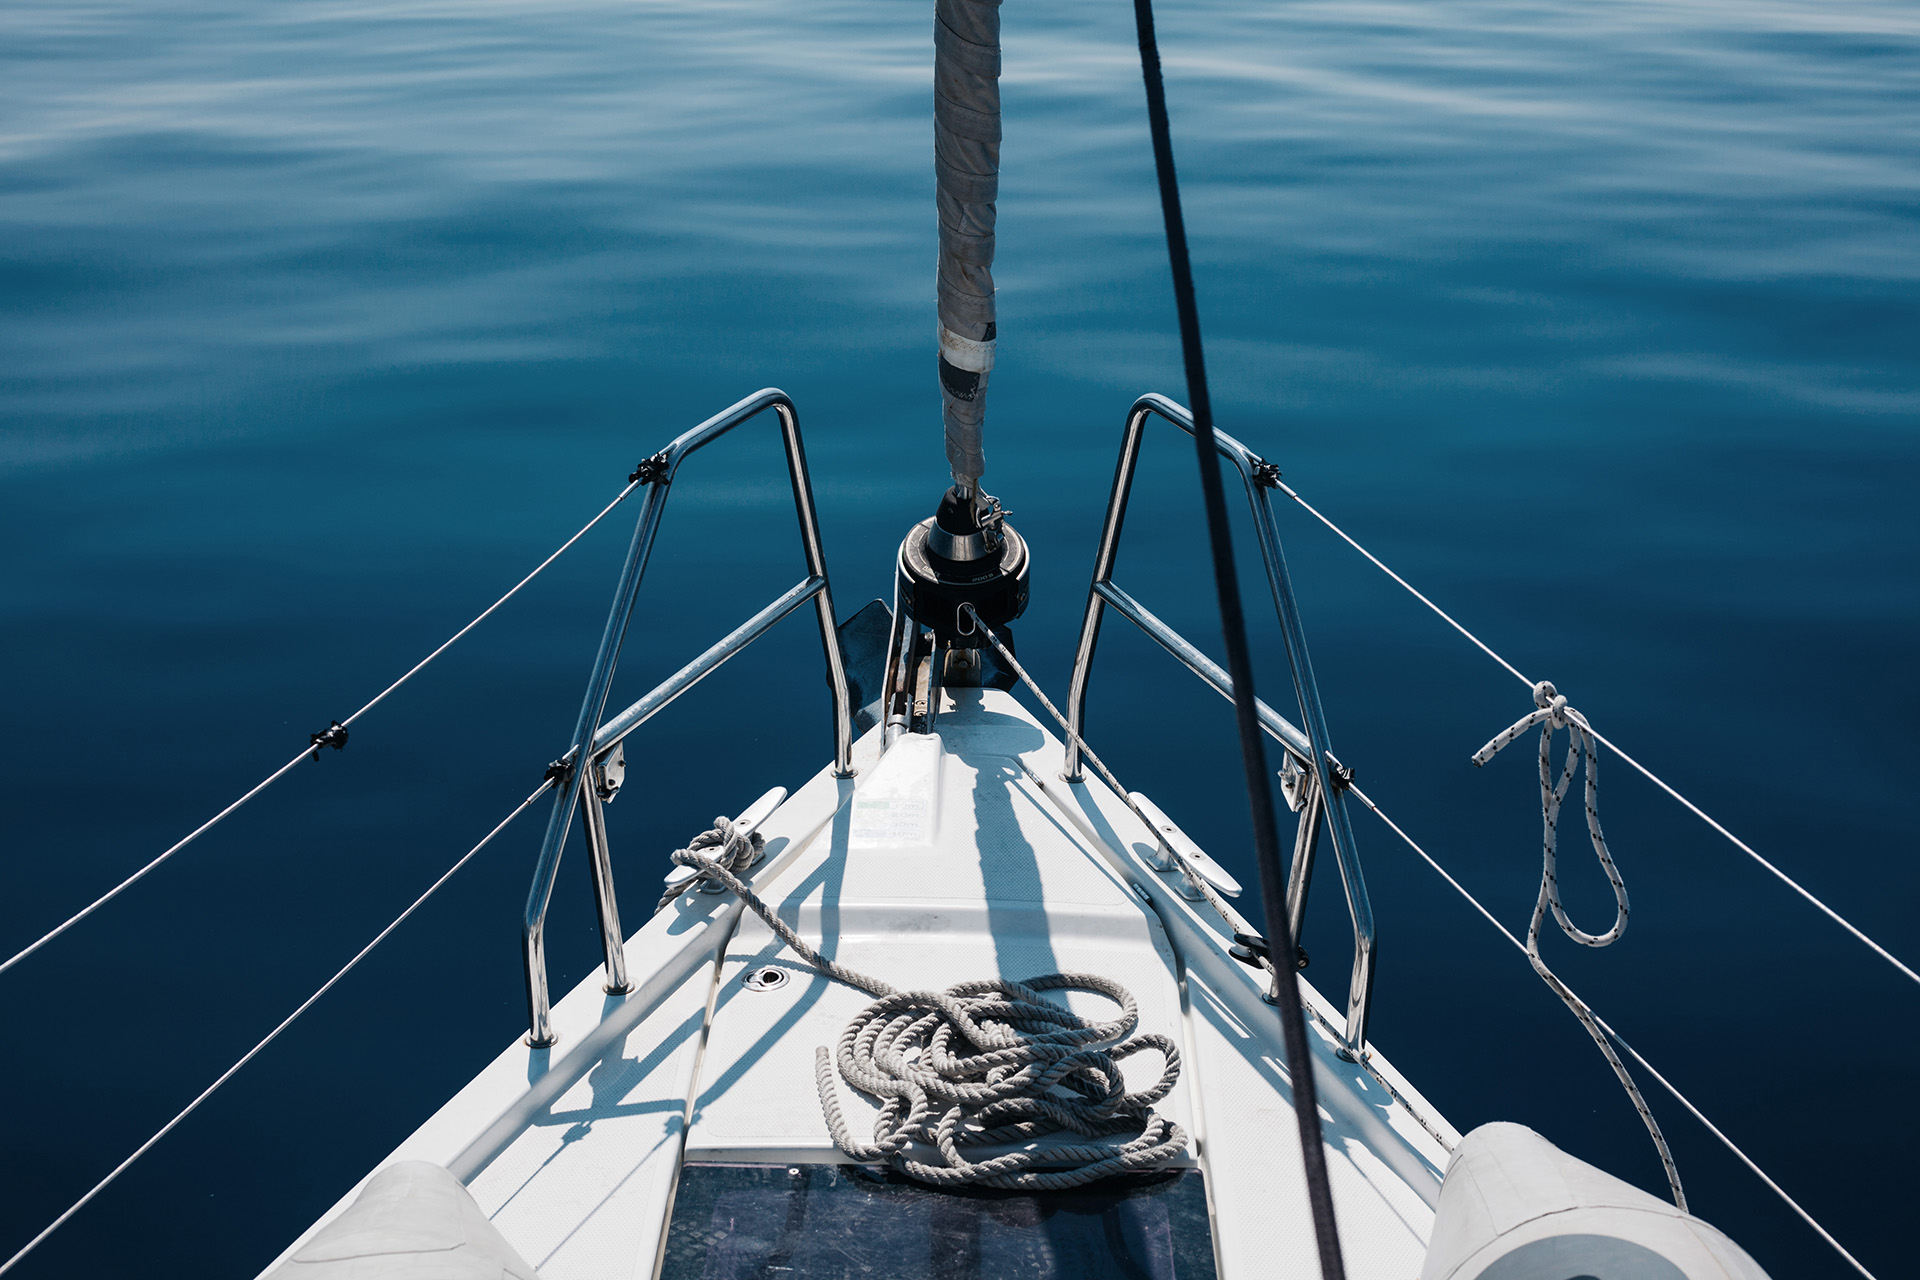 Bug einer Yacht mit Reling und Seilen. Im Hintergrund blaues Wasser.